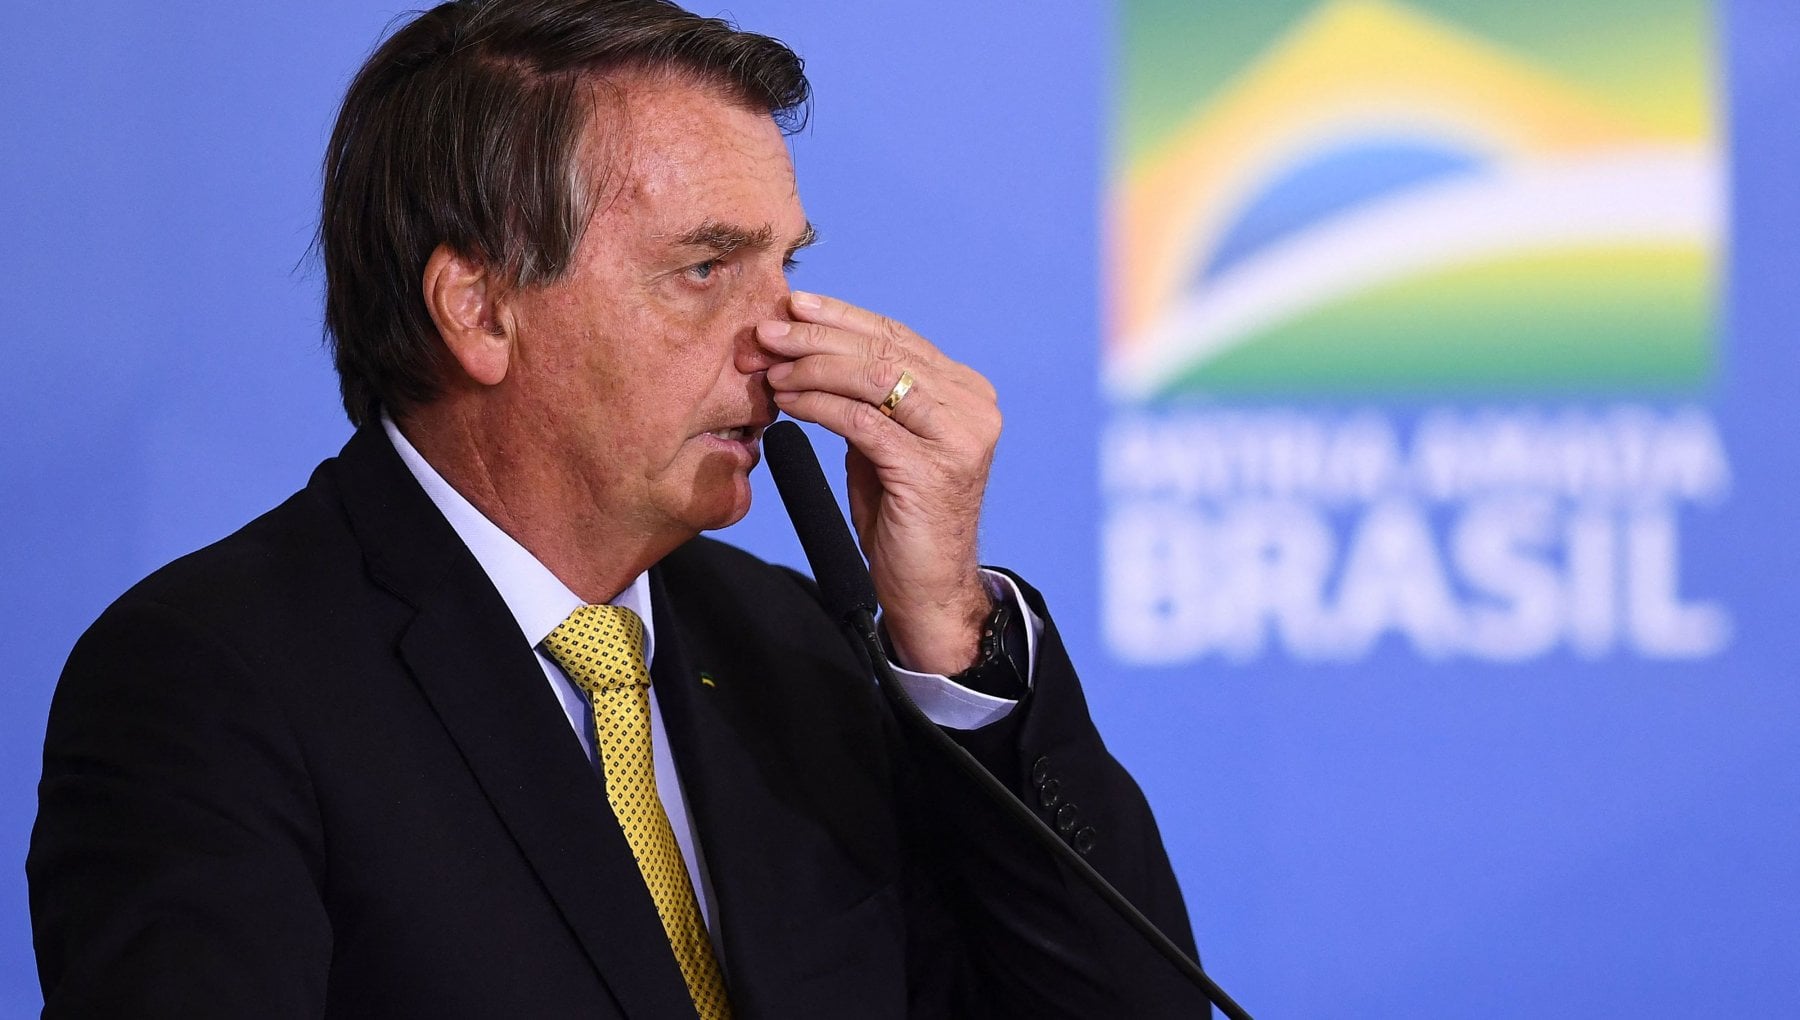 Bolsonaro ora recita la parte del pentito: "Mi rammarico per l'8 gennaio, è incredibile quello che è successo"